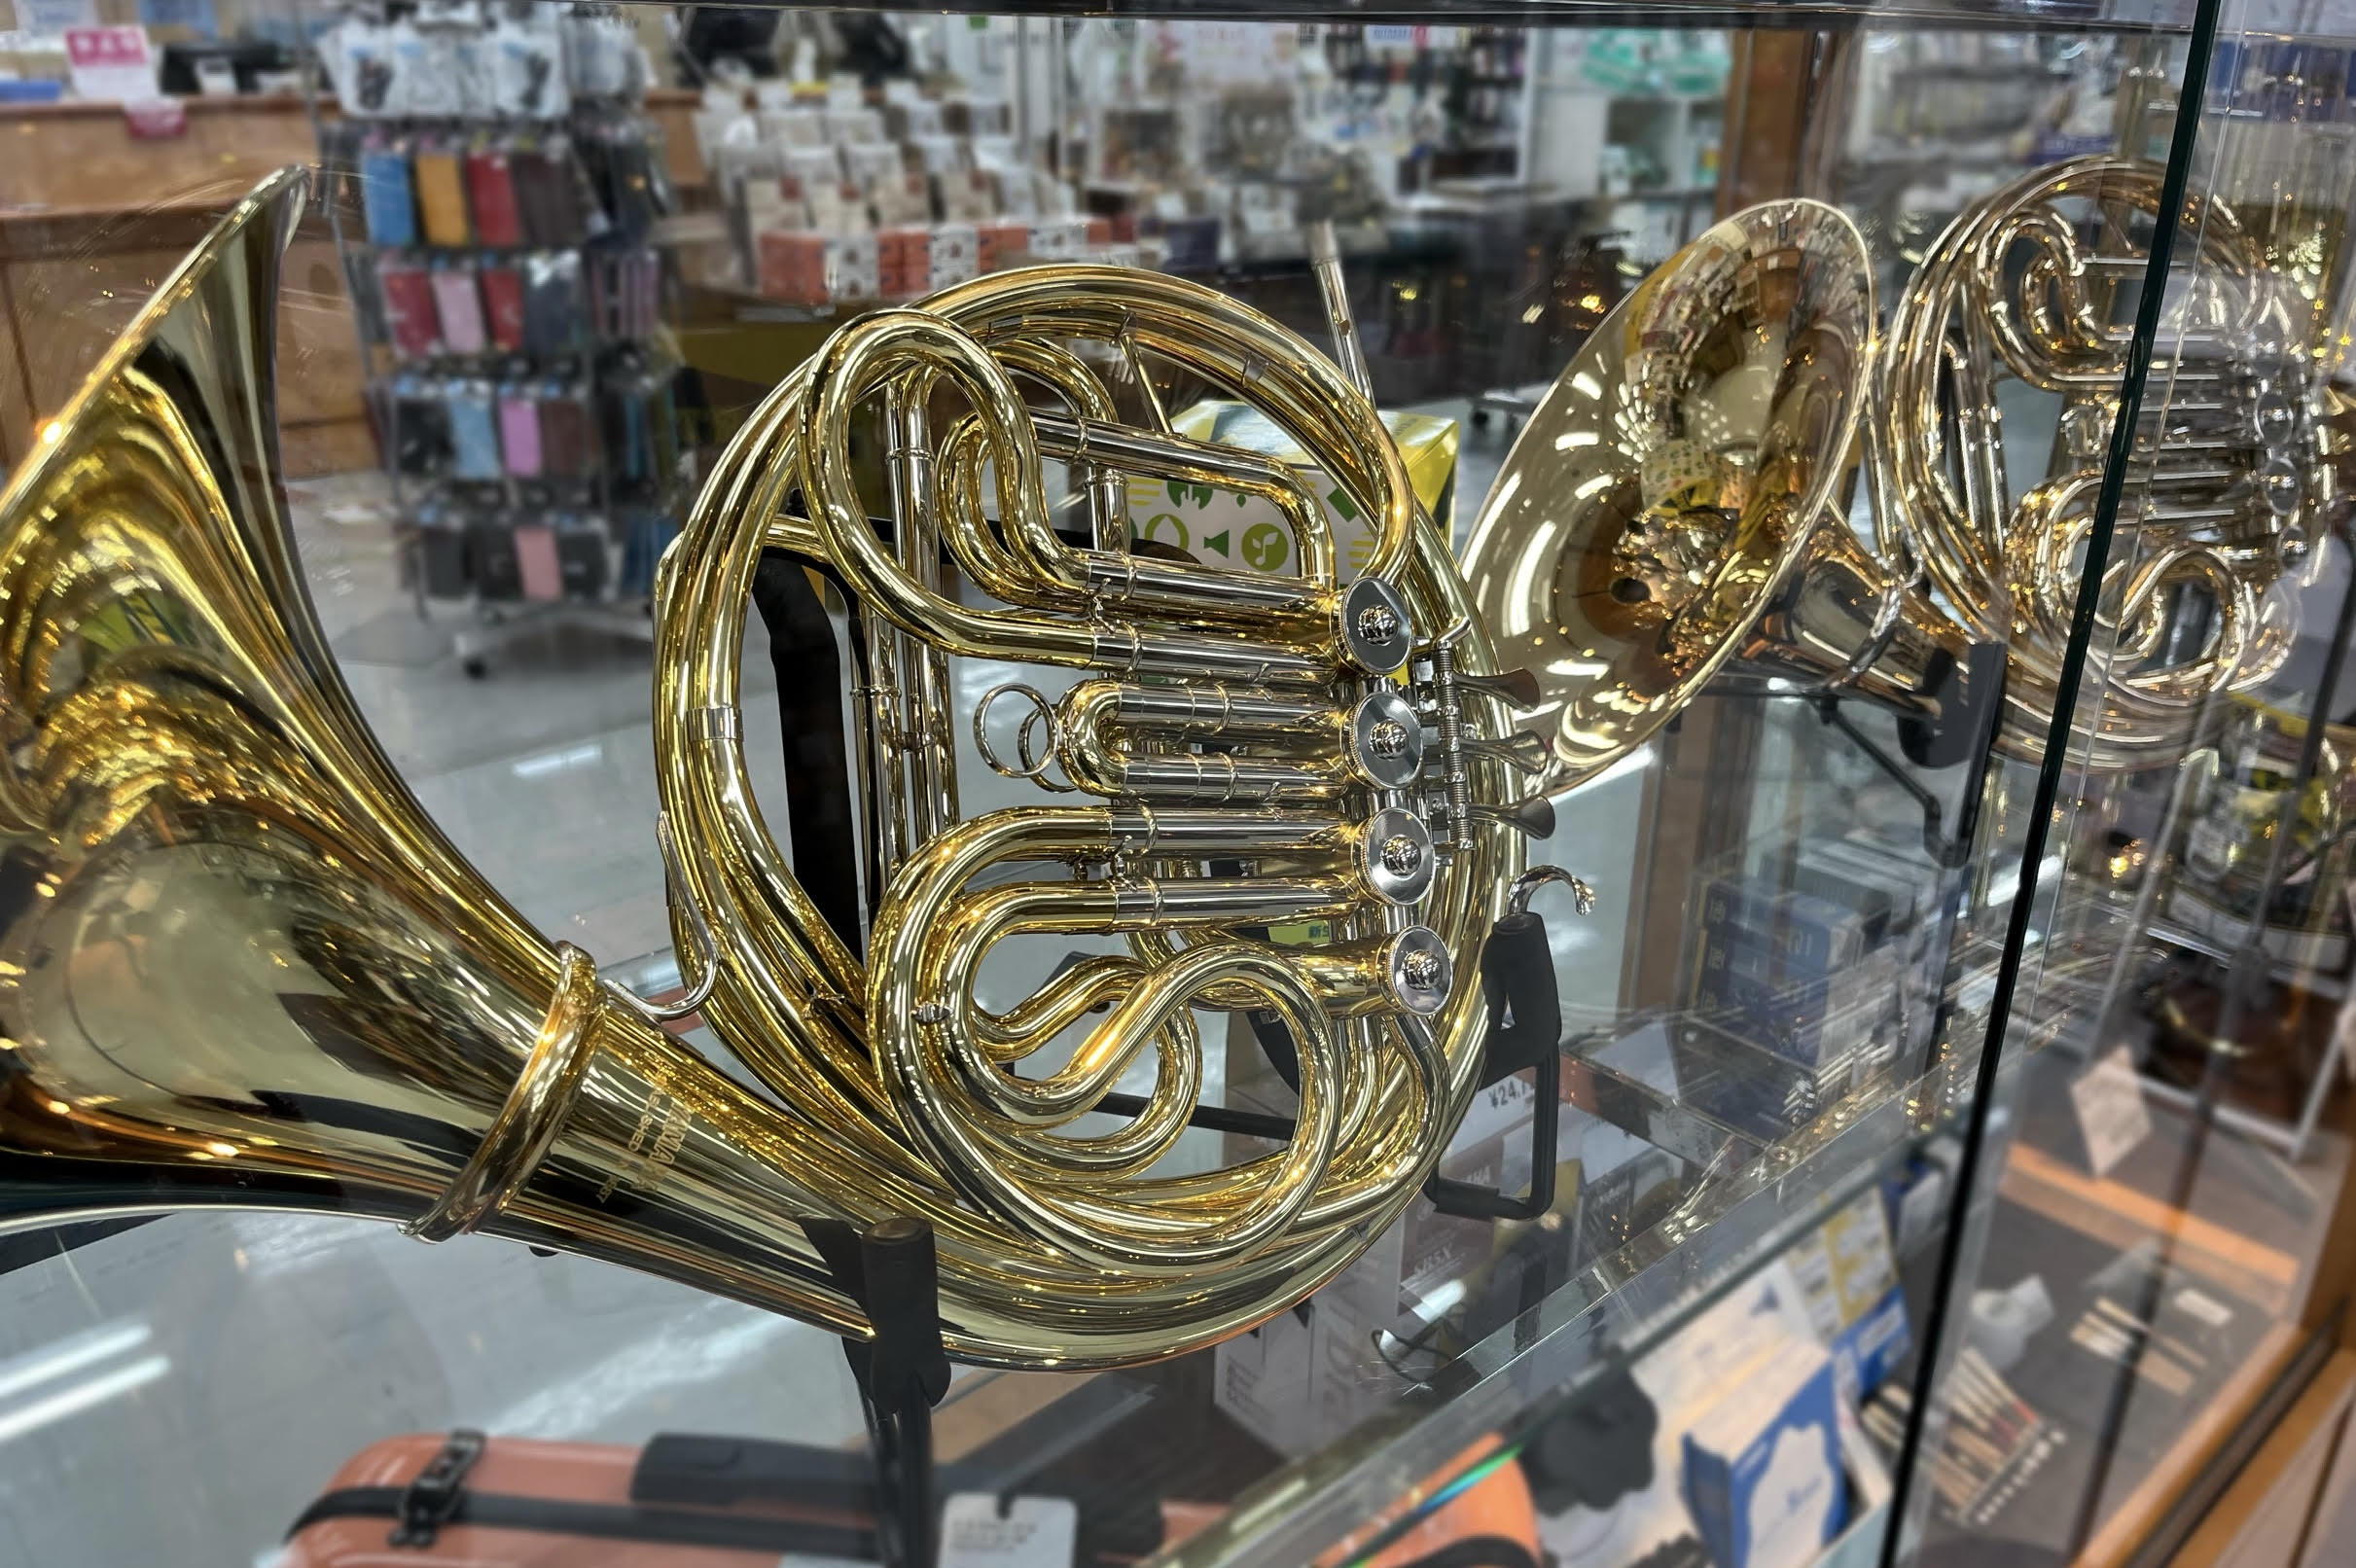 千葉店にホルンが入荷致しました！ 拭き心地や商品にお悩みの吹奏楽部員さん、これから管楽器に挑戦してみようかお悩みのお客様も… 試奏大歓迎です！是非ご来店お待ちしております。